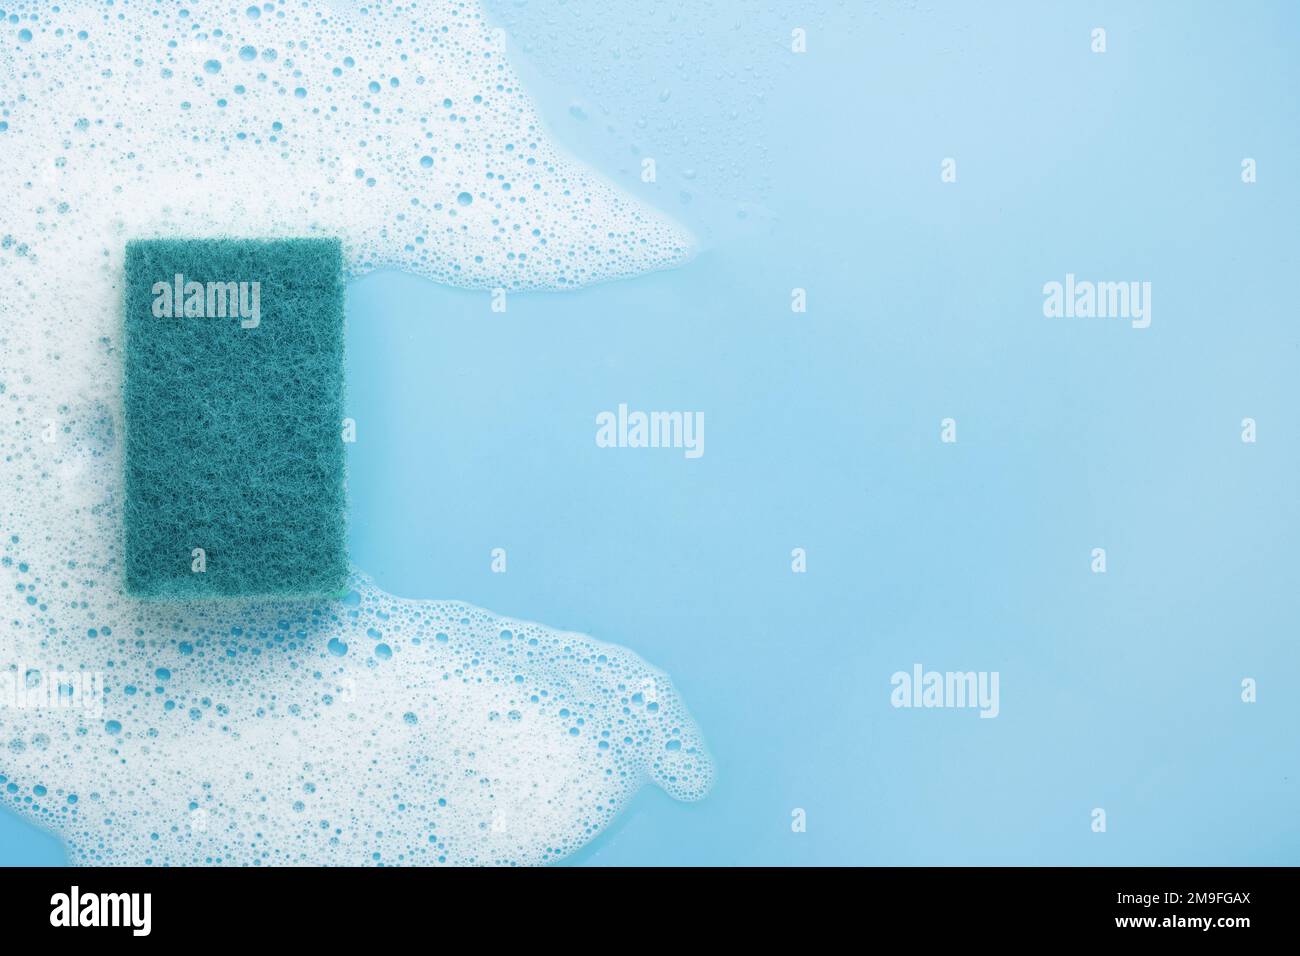 Ein Reinigungsschwamm aus weißem Schaum, Mousse, auf blauem Hintergrund. Rahmen für Text. Das Konzept der Schaum-, Reinigungs- oder Reinigungsmittel. Stockfoto